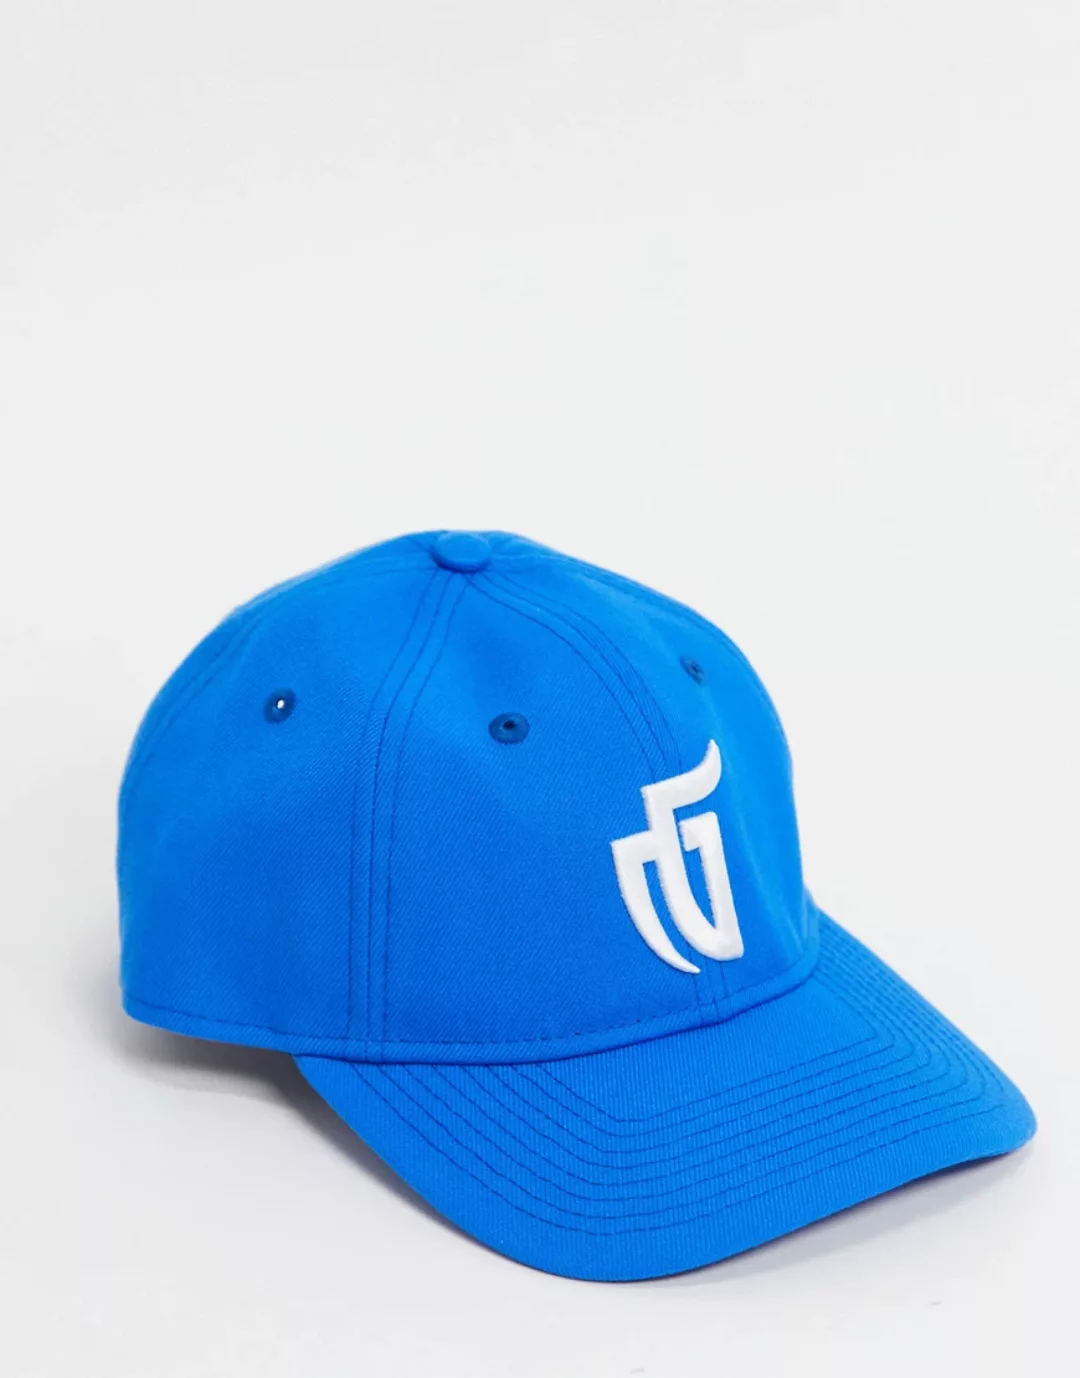 New Era – 920 – Kappe in Blau günstig online kaufen